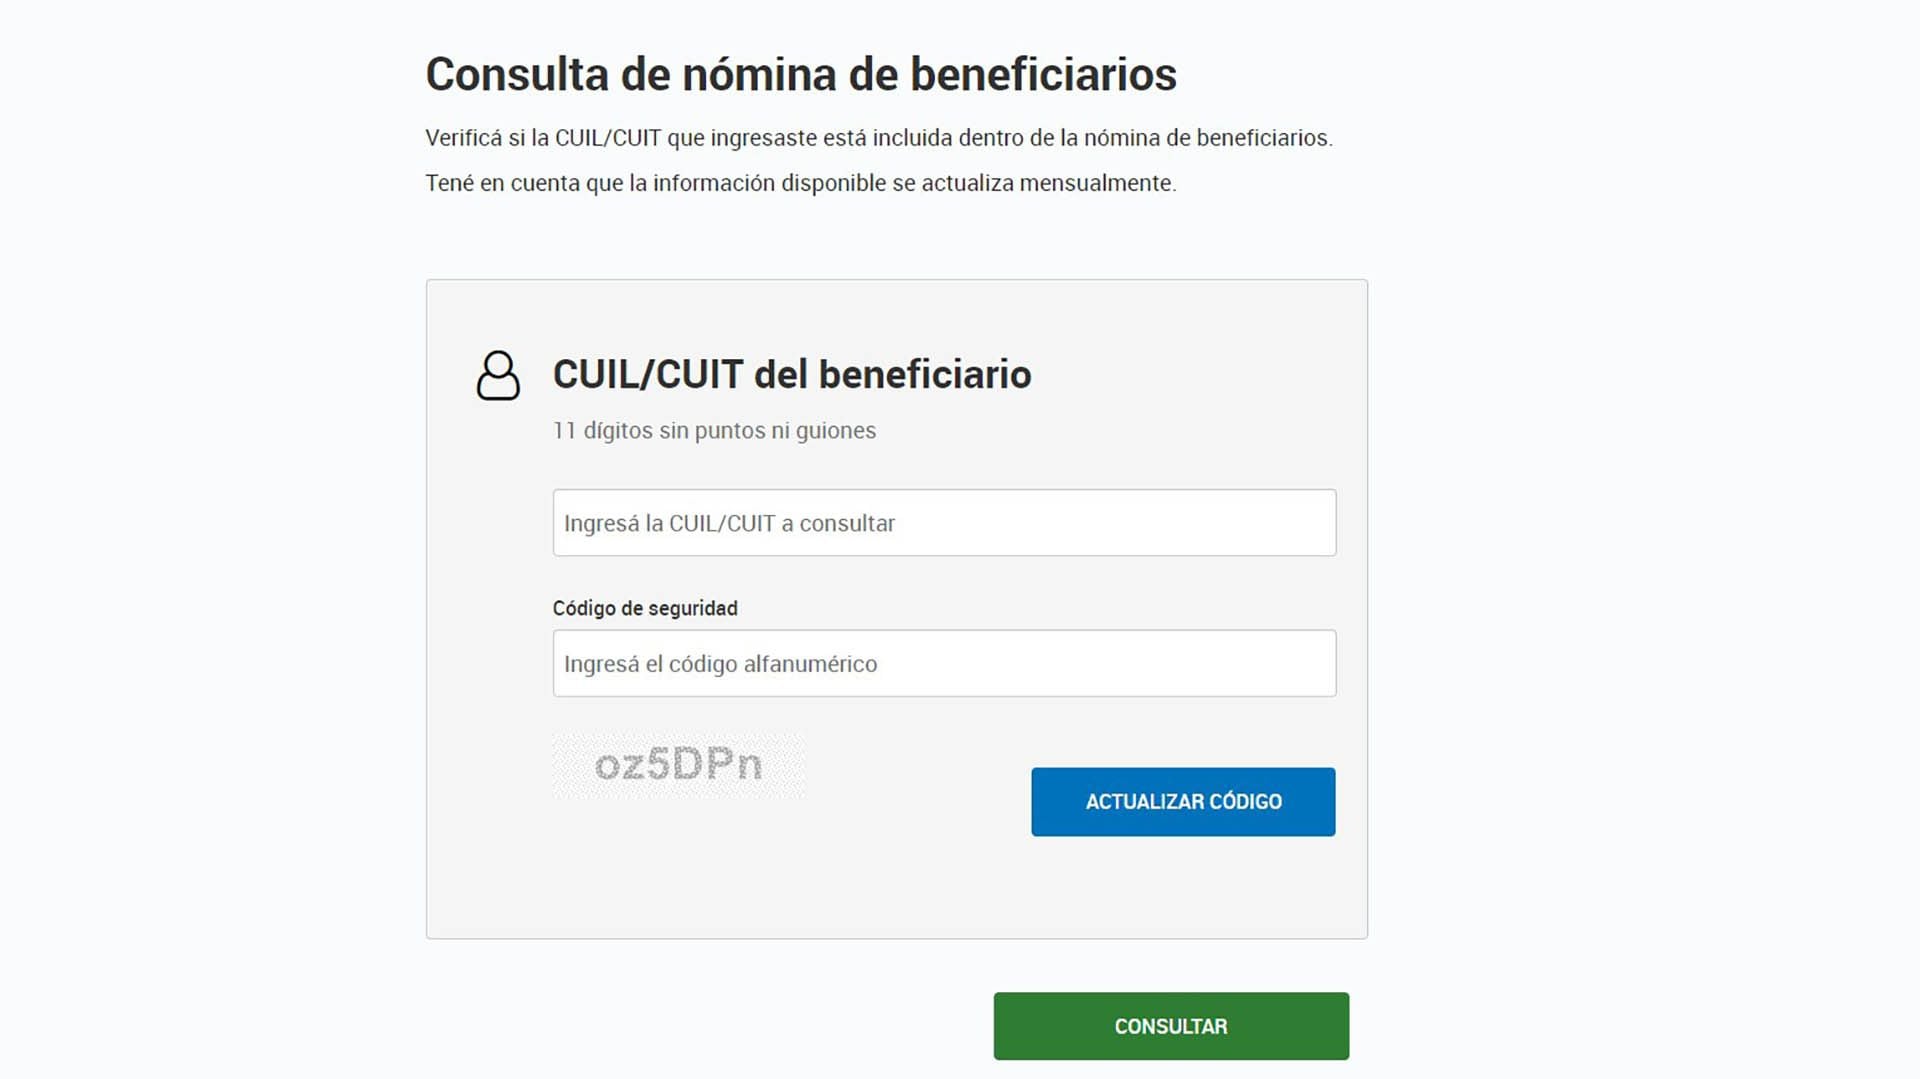 El formulario de AFIP que permite ingresar CUIT/CUIL para saber si se recibirá el reintegro